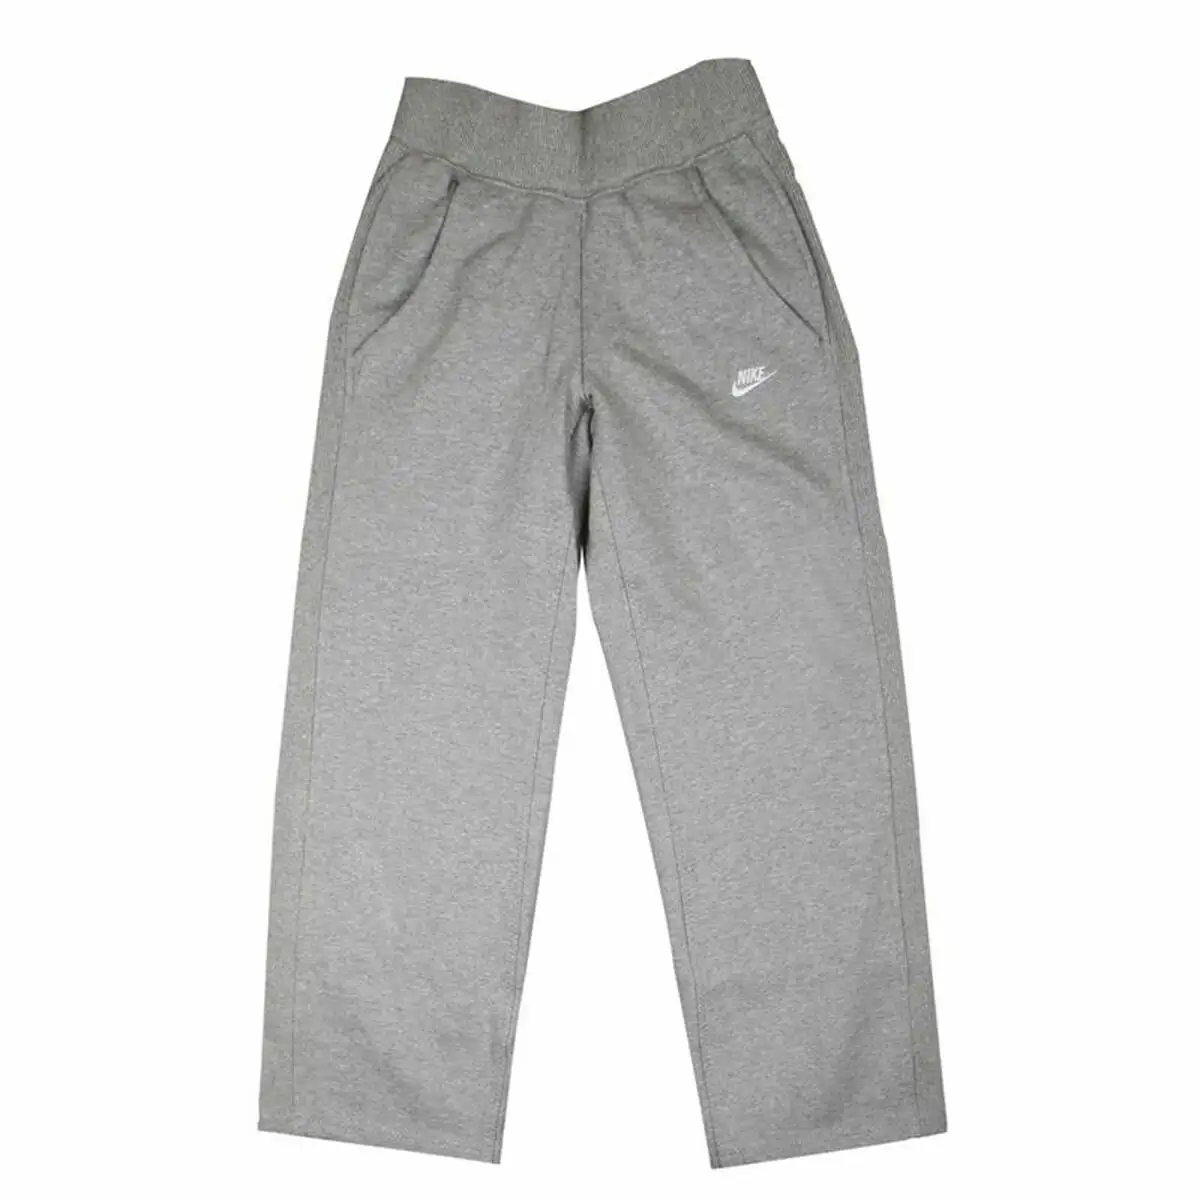 Pantalons de survetement pour enfants nike essentials fleece gris clair_9137. DIAYTAR SENEGAL - L'Art de Vivre l'Élégance Accessible. Parcourez notre gamme variée et choisissez des produits qui ajoutent une touche de sophistication à votre style.